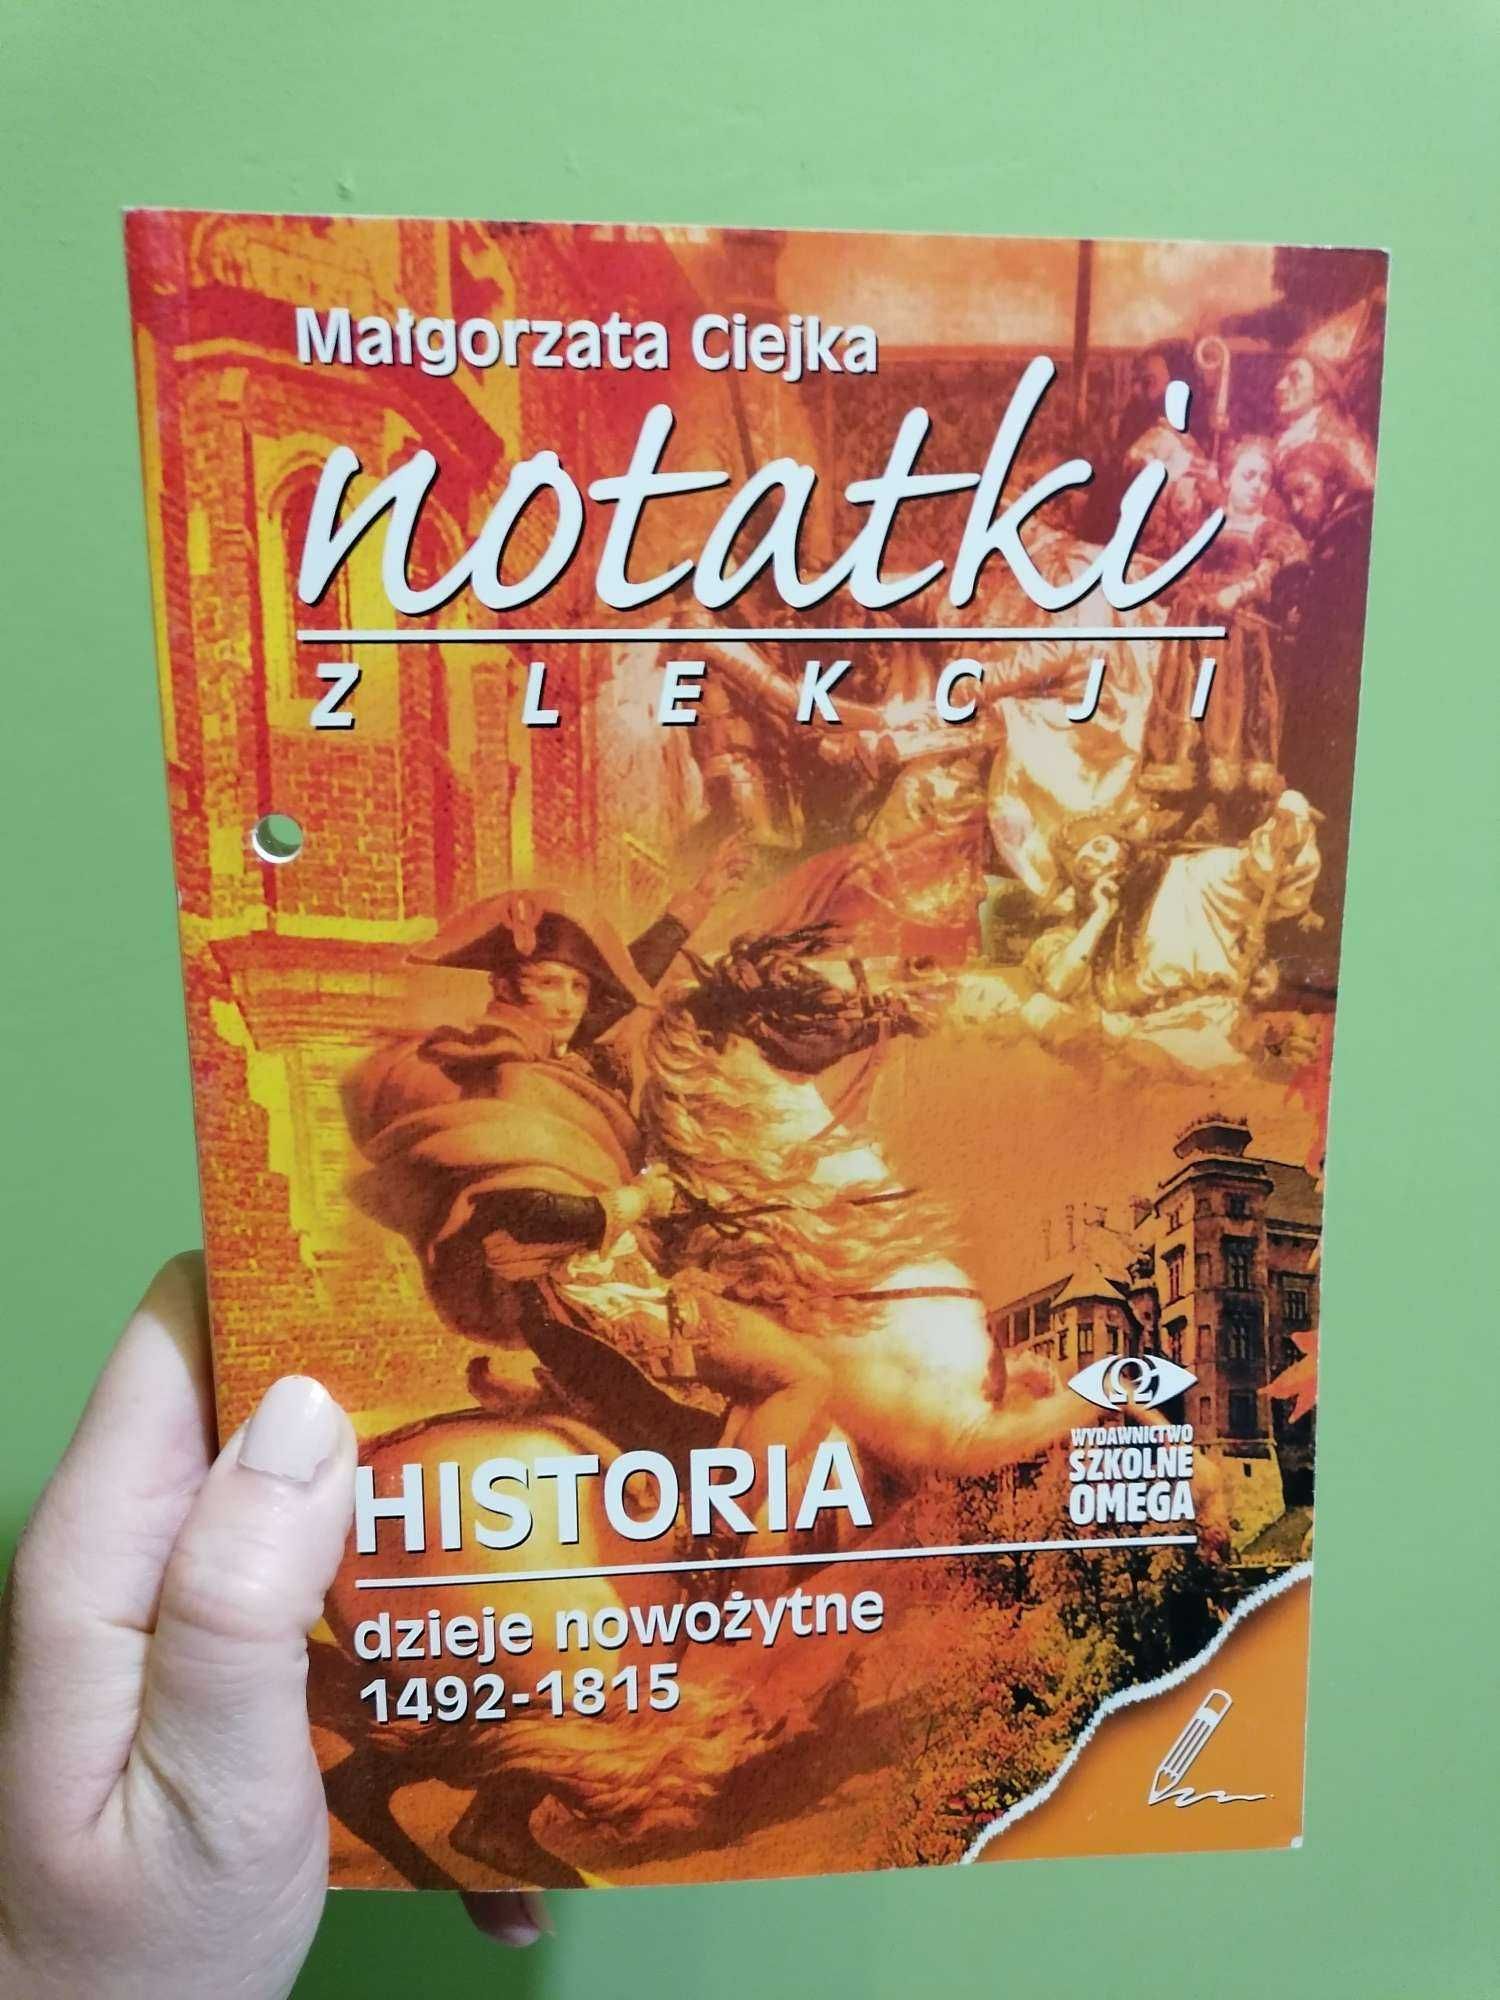 Notatki z lekcji. Historia - dzieje nowożytne 1492 -1815. Wyd. OMEGA